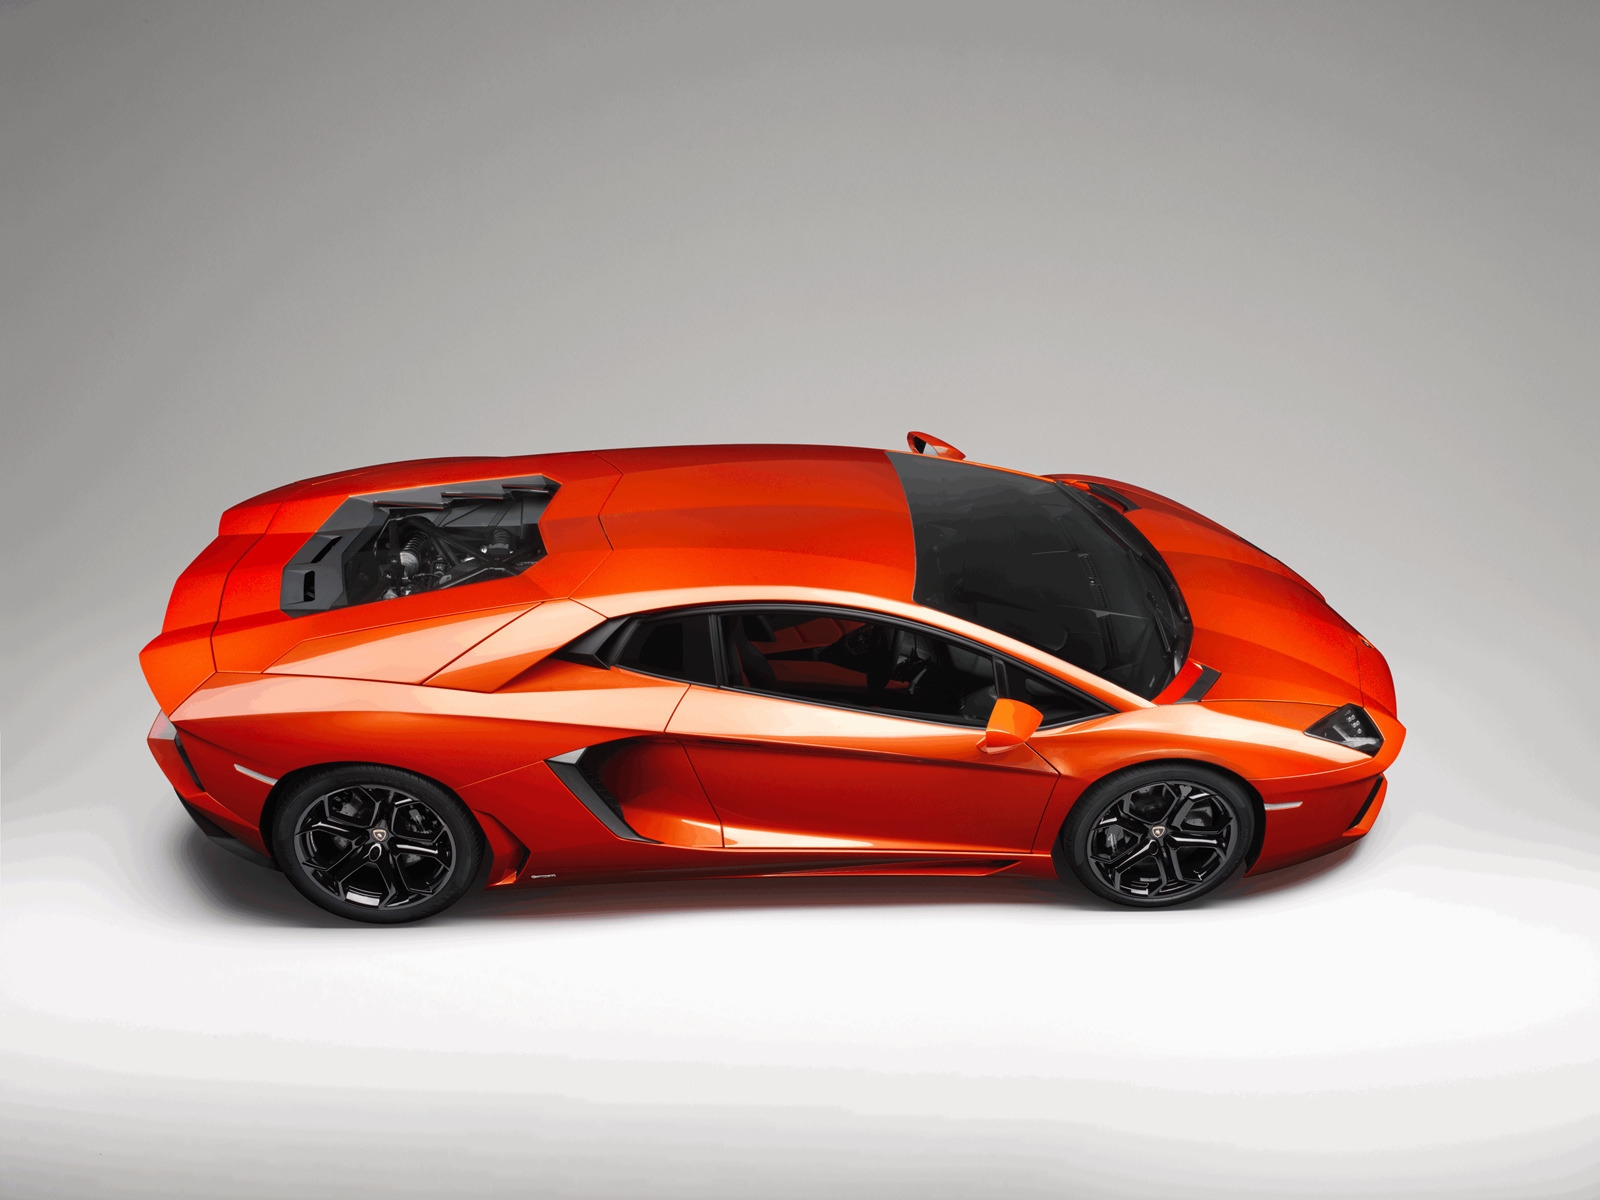 Lamborghini Aventador Studio for 1600 x 1200 resolution